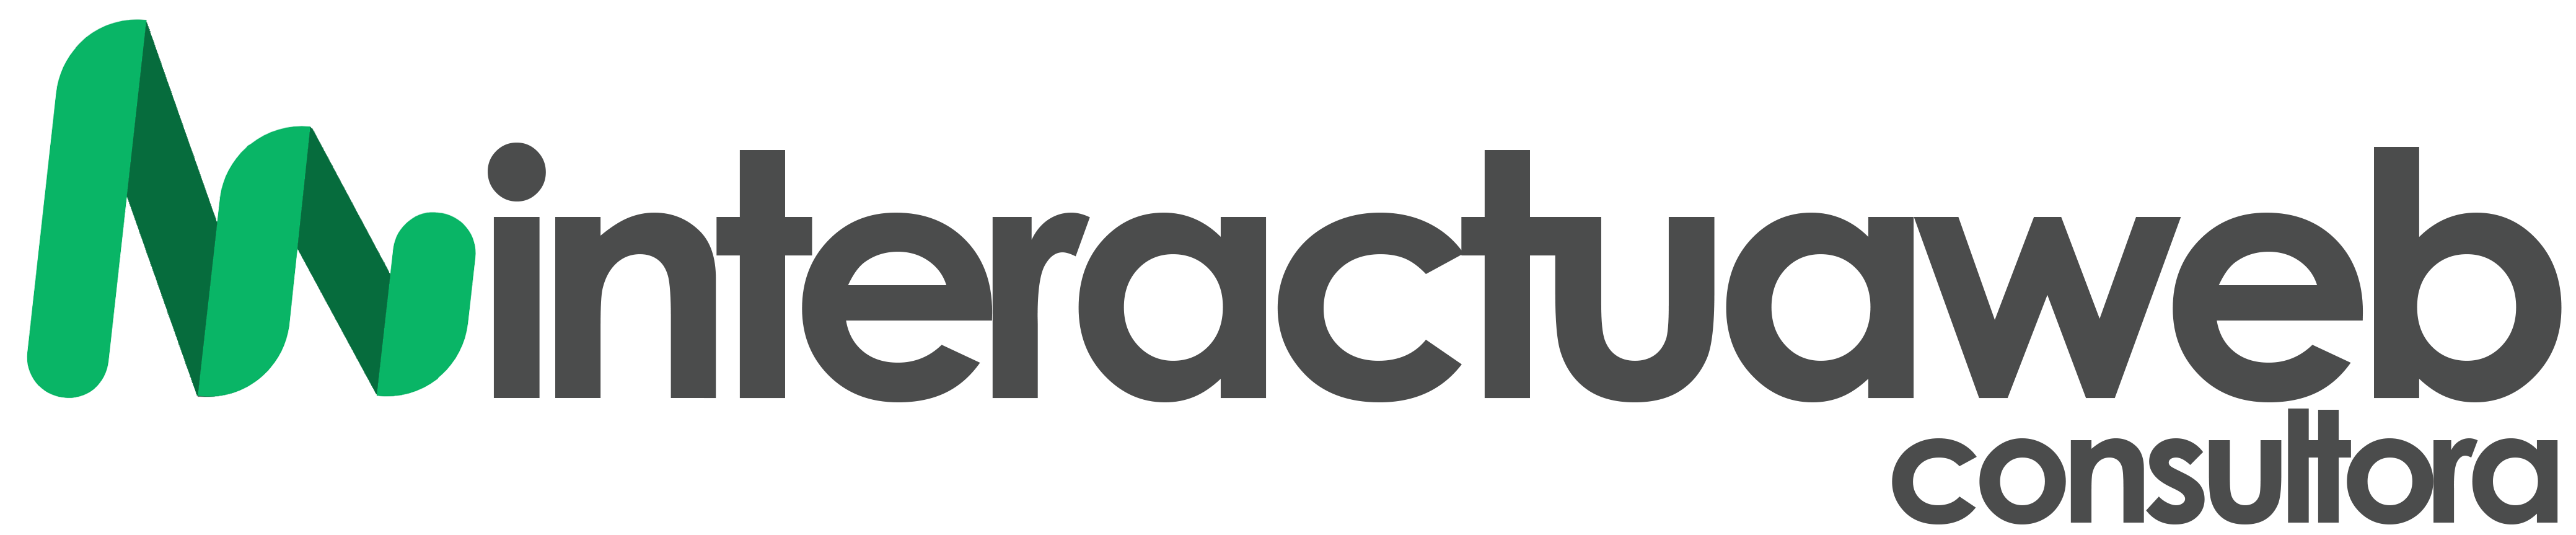 logo interactuaweb gris